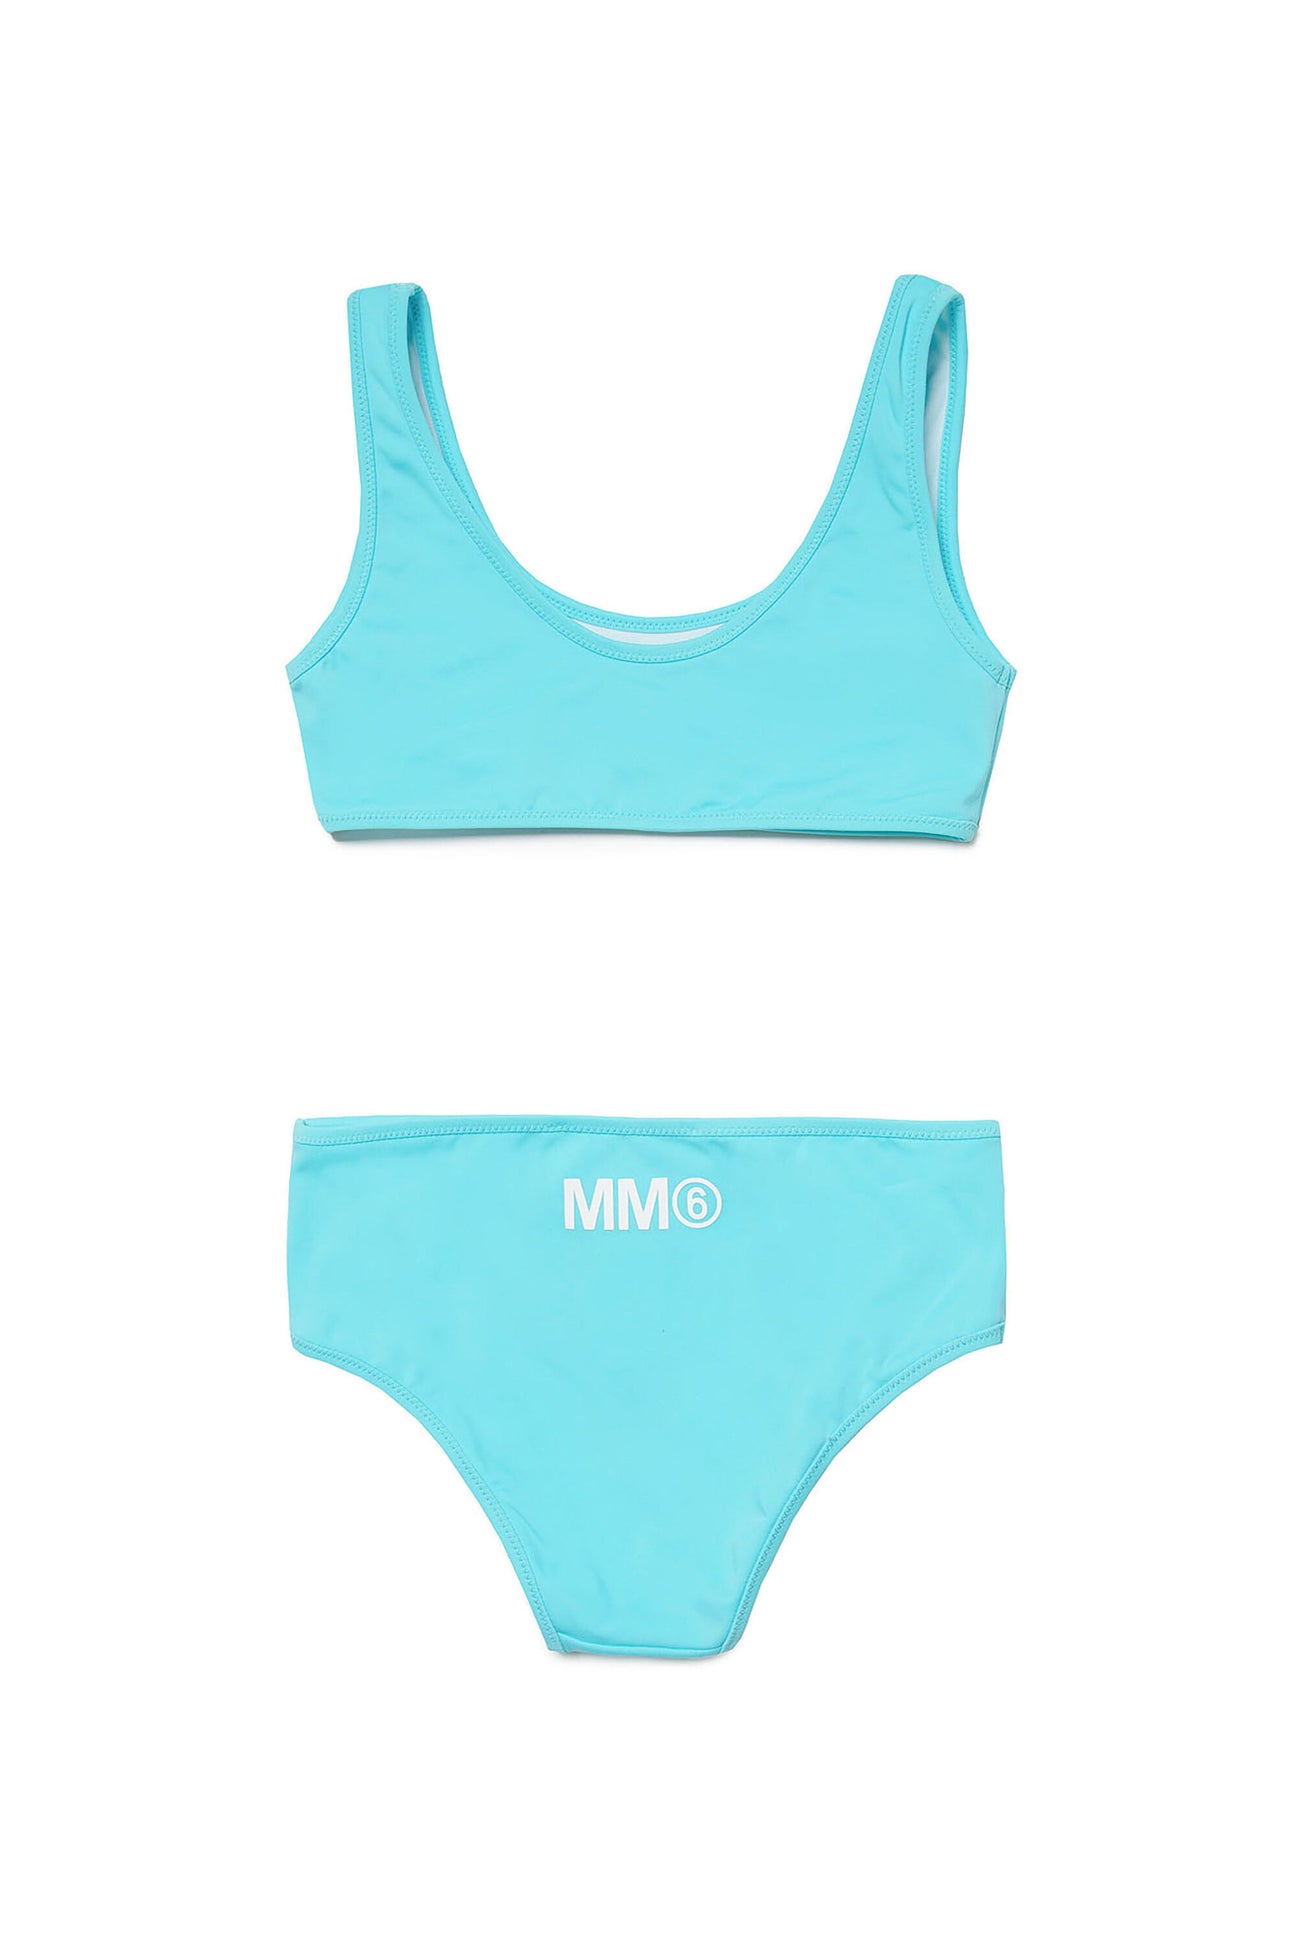 Costume bikini in lycra con logo MM6 Costume bikini in lycra con logo MM6